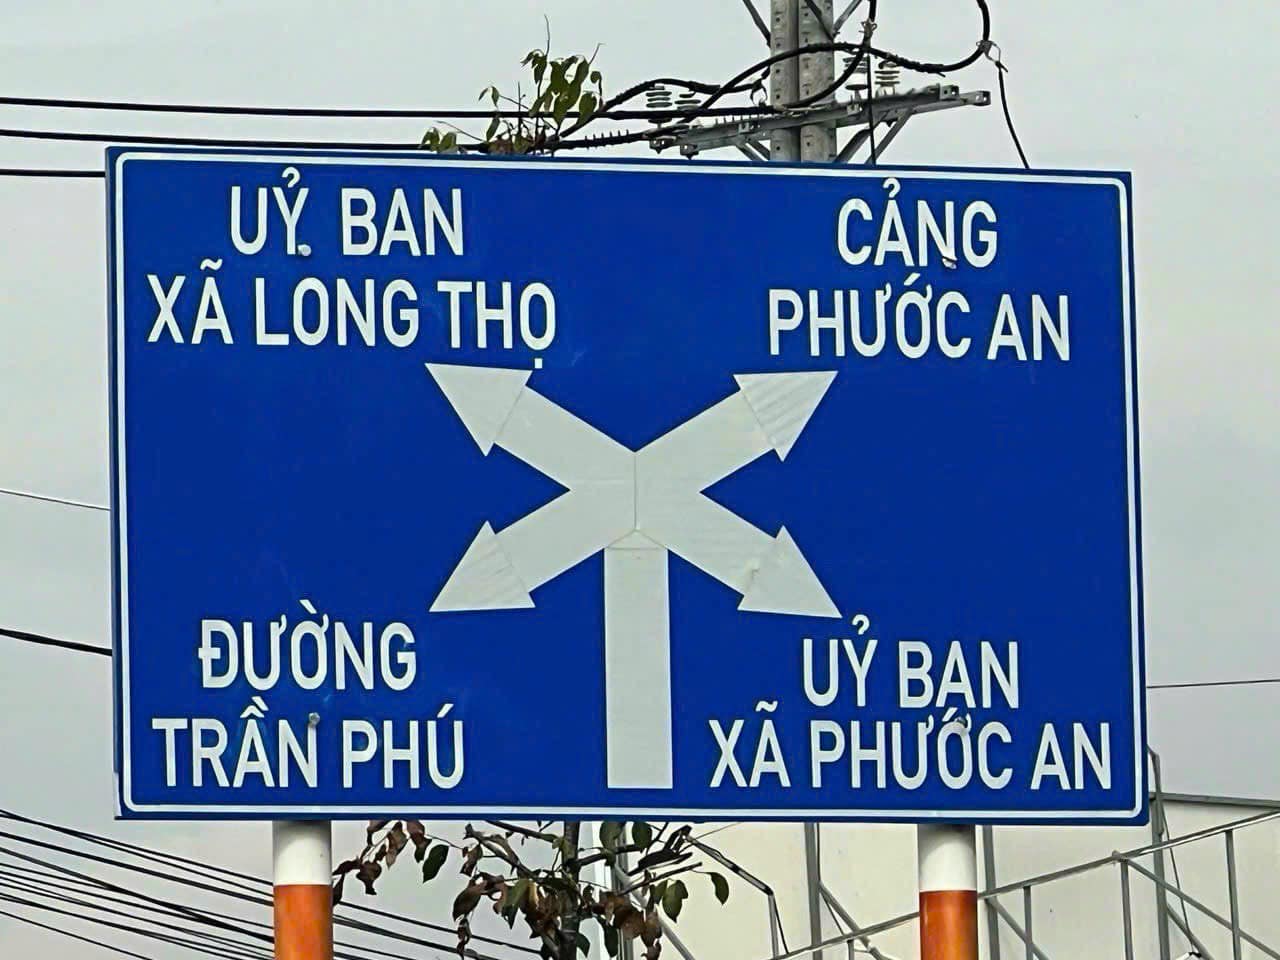 Cty Saigonland cần bán đất nền khu Tái Định Cư Long Thọ Nhơn Trạch - Cửa ngõ Cảng Phước An. - Ảnh 1